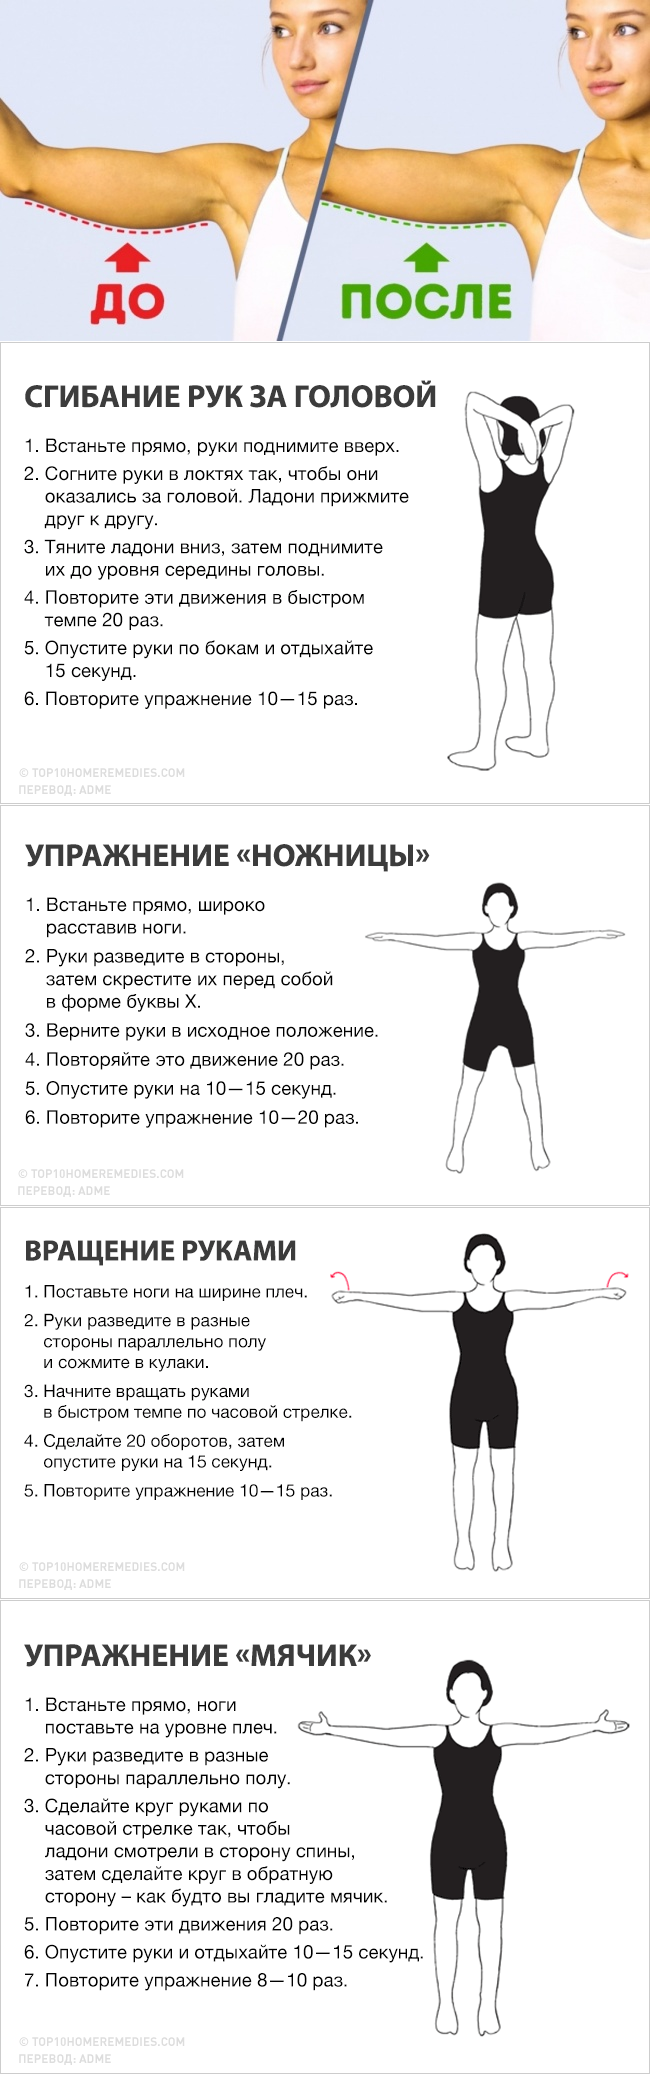 Как похудеть в руках и плечах: тренировка для девушек